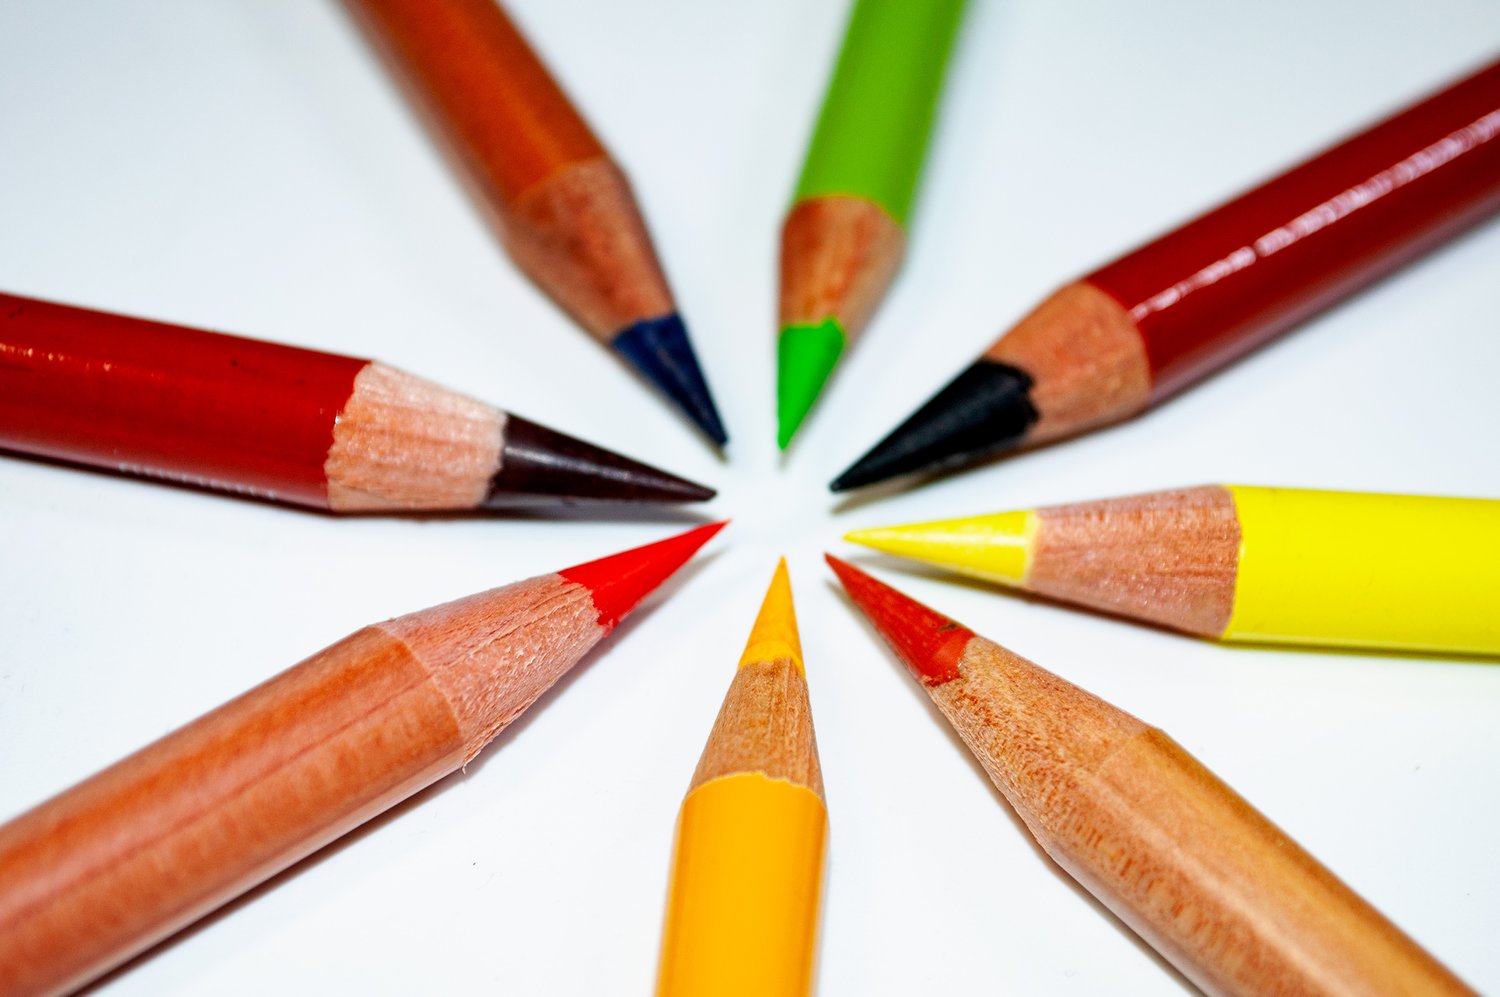 Art supplies (Pencils, pens, colored pencils, markers) - arts